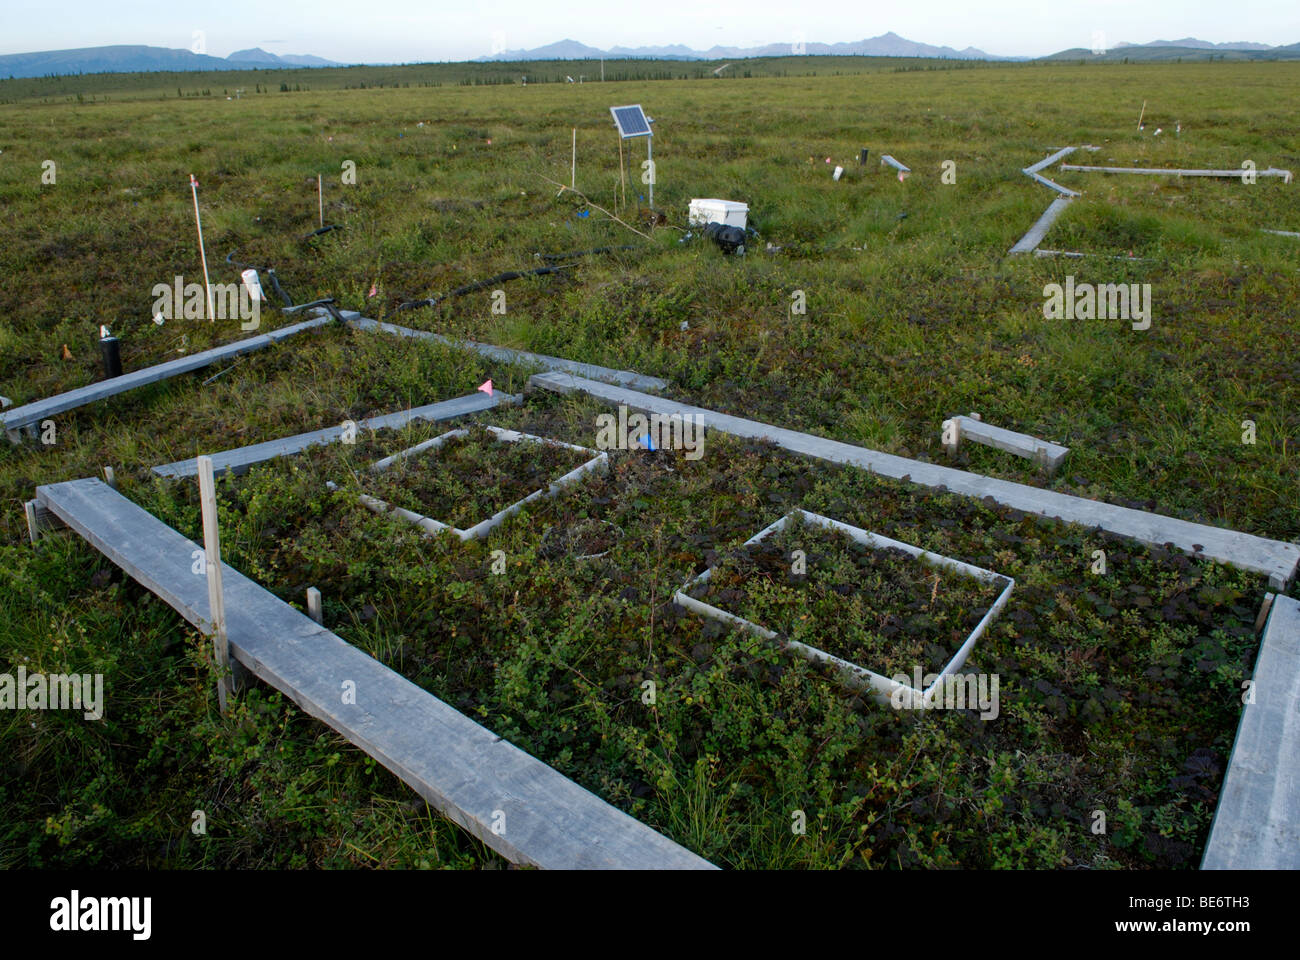 Site de recherche sur le changement climatique, de l'Alaska. La libération de dioxyde de carbone par le dégel du pergélisol est mesurée avec la croissance de la toundra. Banque D'Images